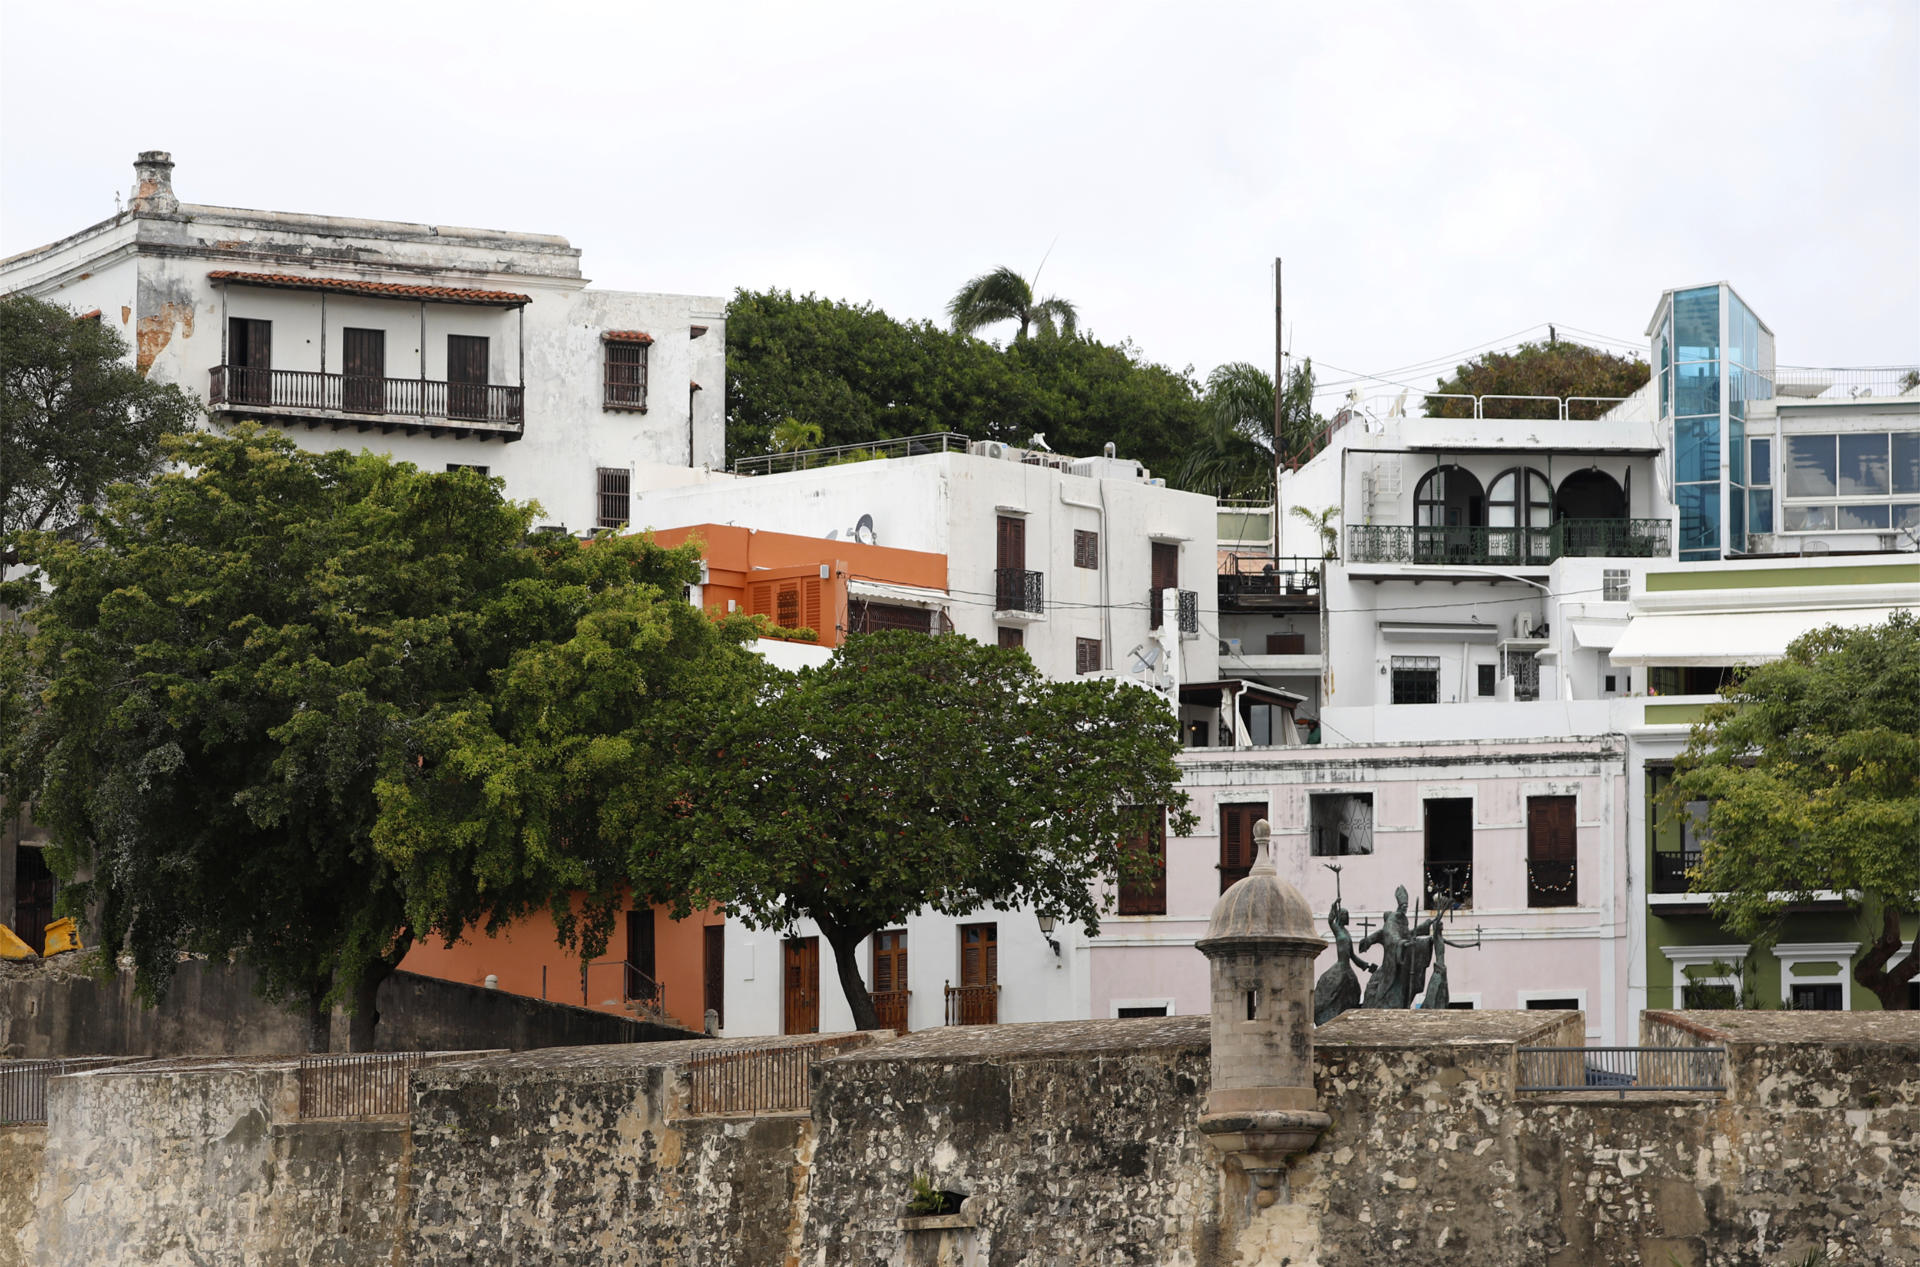 Fotografía que muestra la muralla de San Juan y parte de su vecindario en el Viejo San Juan (Puerto Rico). Imagen de archivo. EFE/ Thais Llorca
